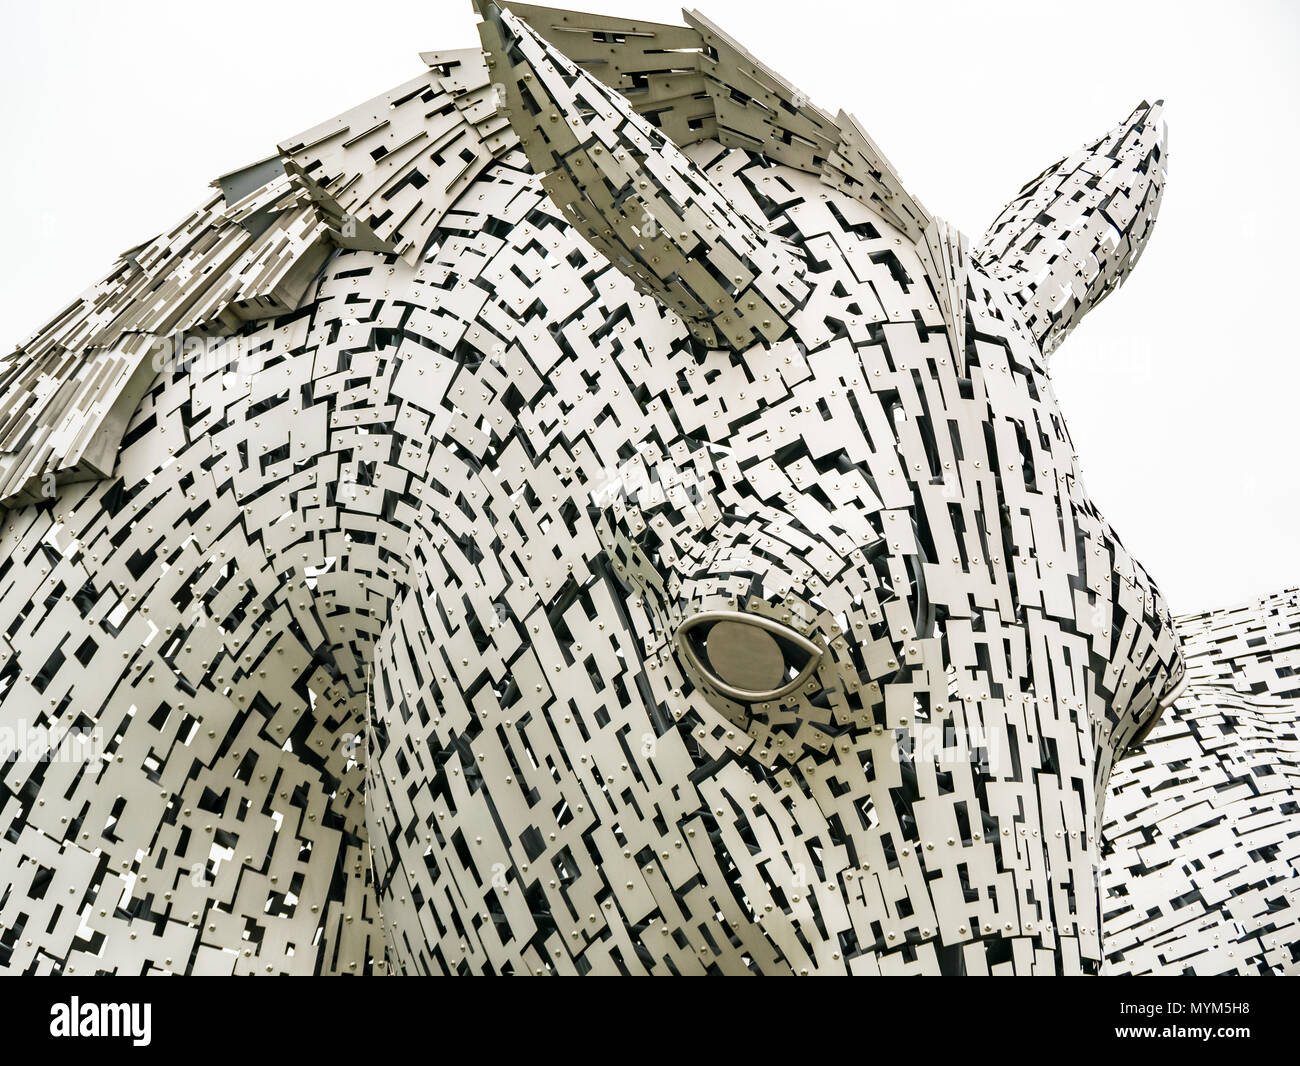 Gros plan sur la sculpture complexe de la tête de cheval en métal de Kelpie par Andy Scott, Helix Park, Falkirk, Écosse, Royaume-Uni Banque D'Images